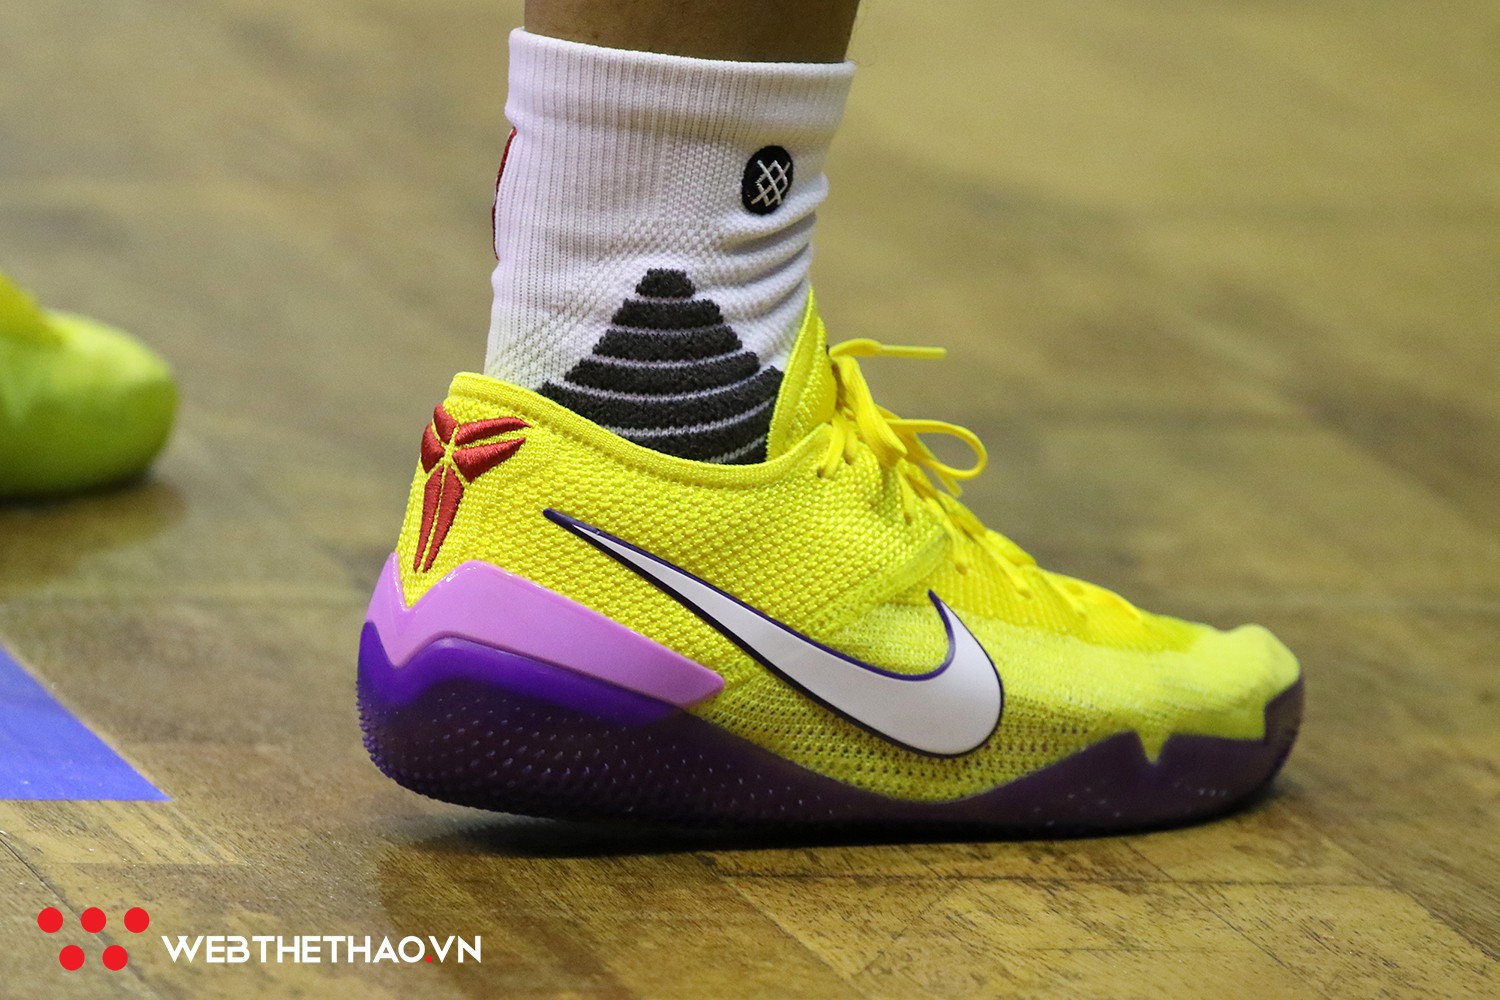 Vớ hồng là xưa rồi, Cantho Catfish giờ chơi hẳn giày đội với những mẫu Nike Kobe cực chất - Ảnh 5.